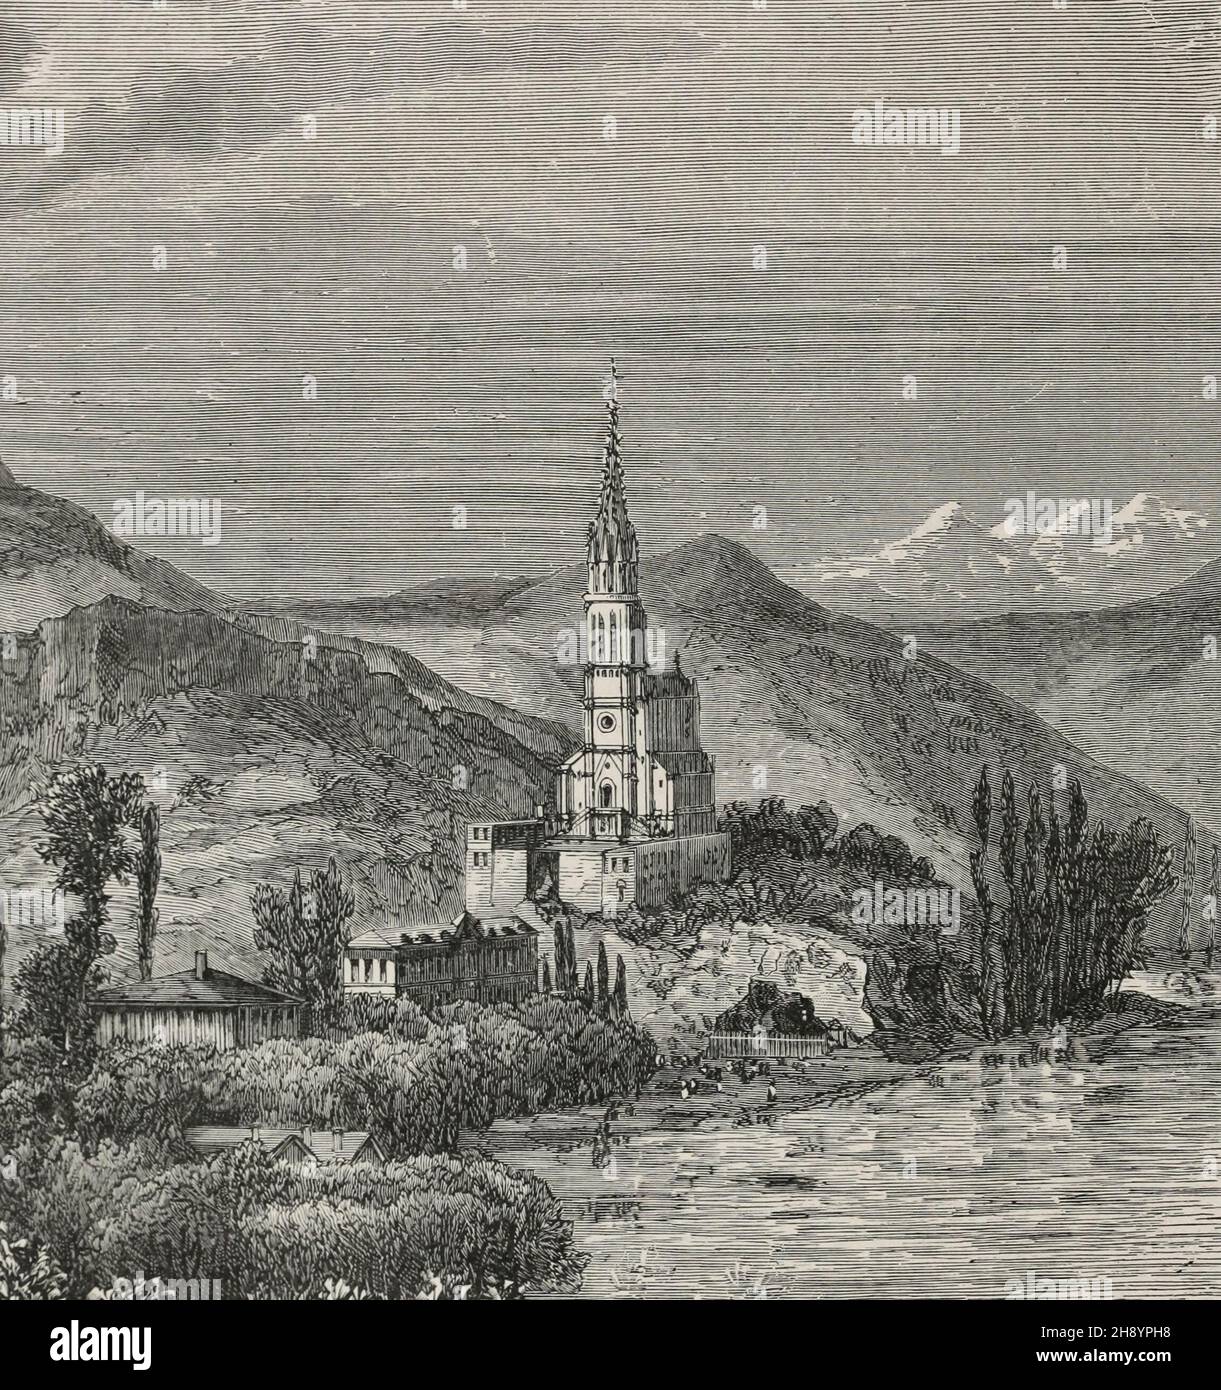 Eglise notre Dame de Lourdes, Hautes Pyrénées, vers 1900 Banque D'Images